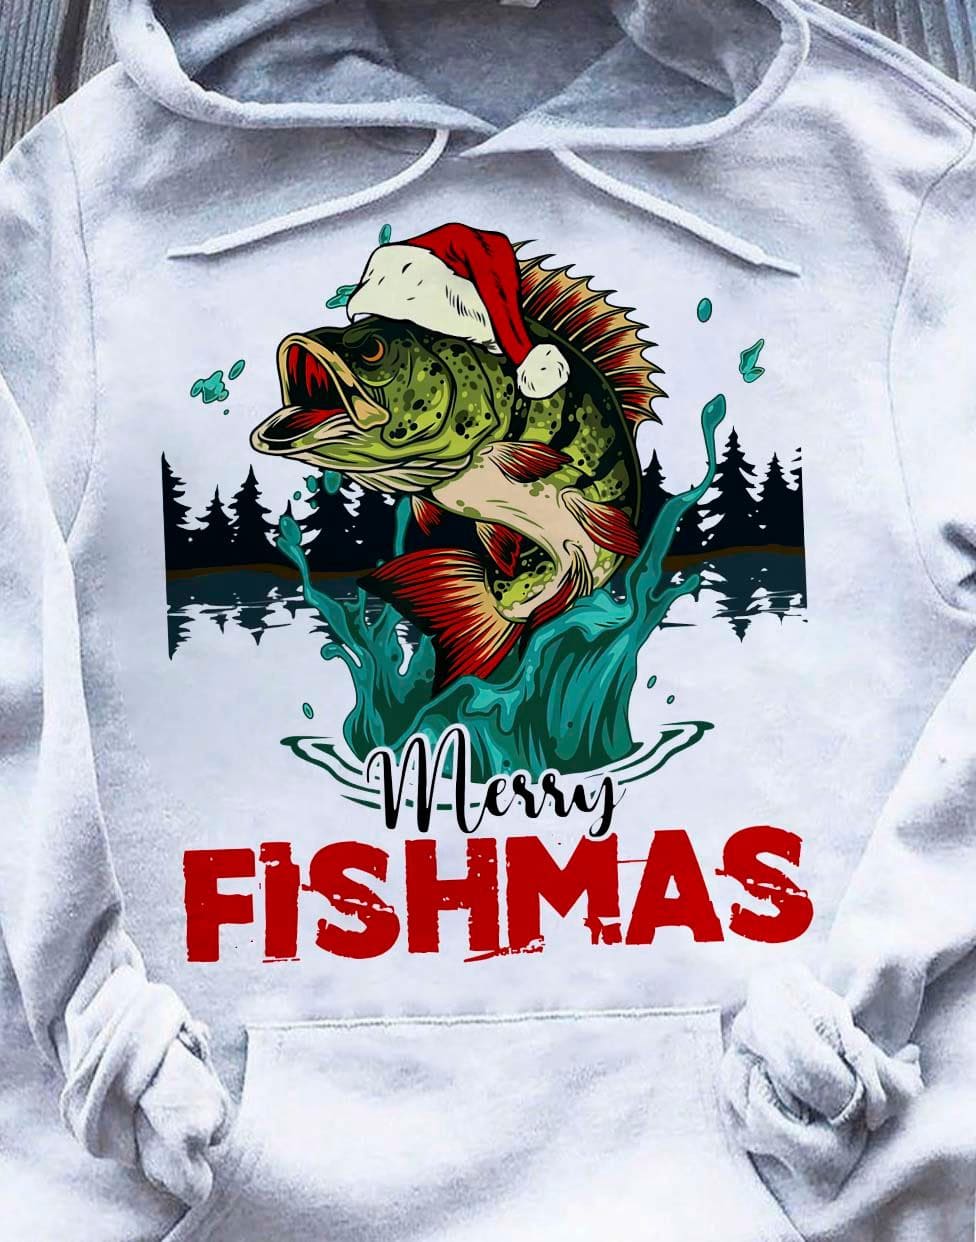 Merry fishmas - Christmas gift for fisherman, Christmas ugly sweater